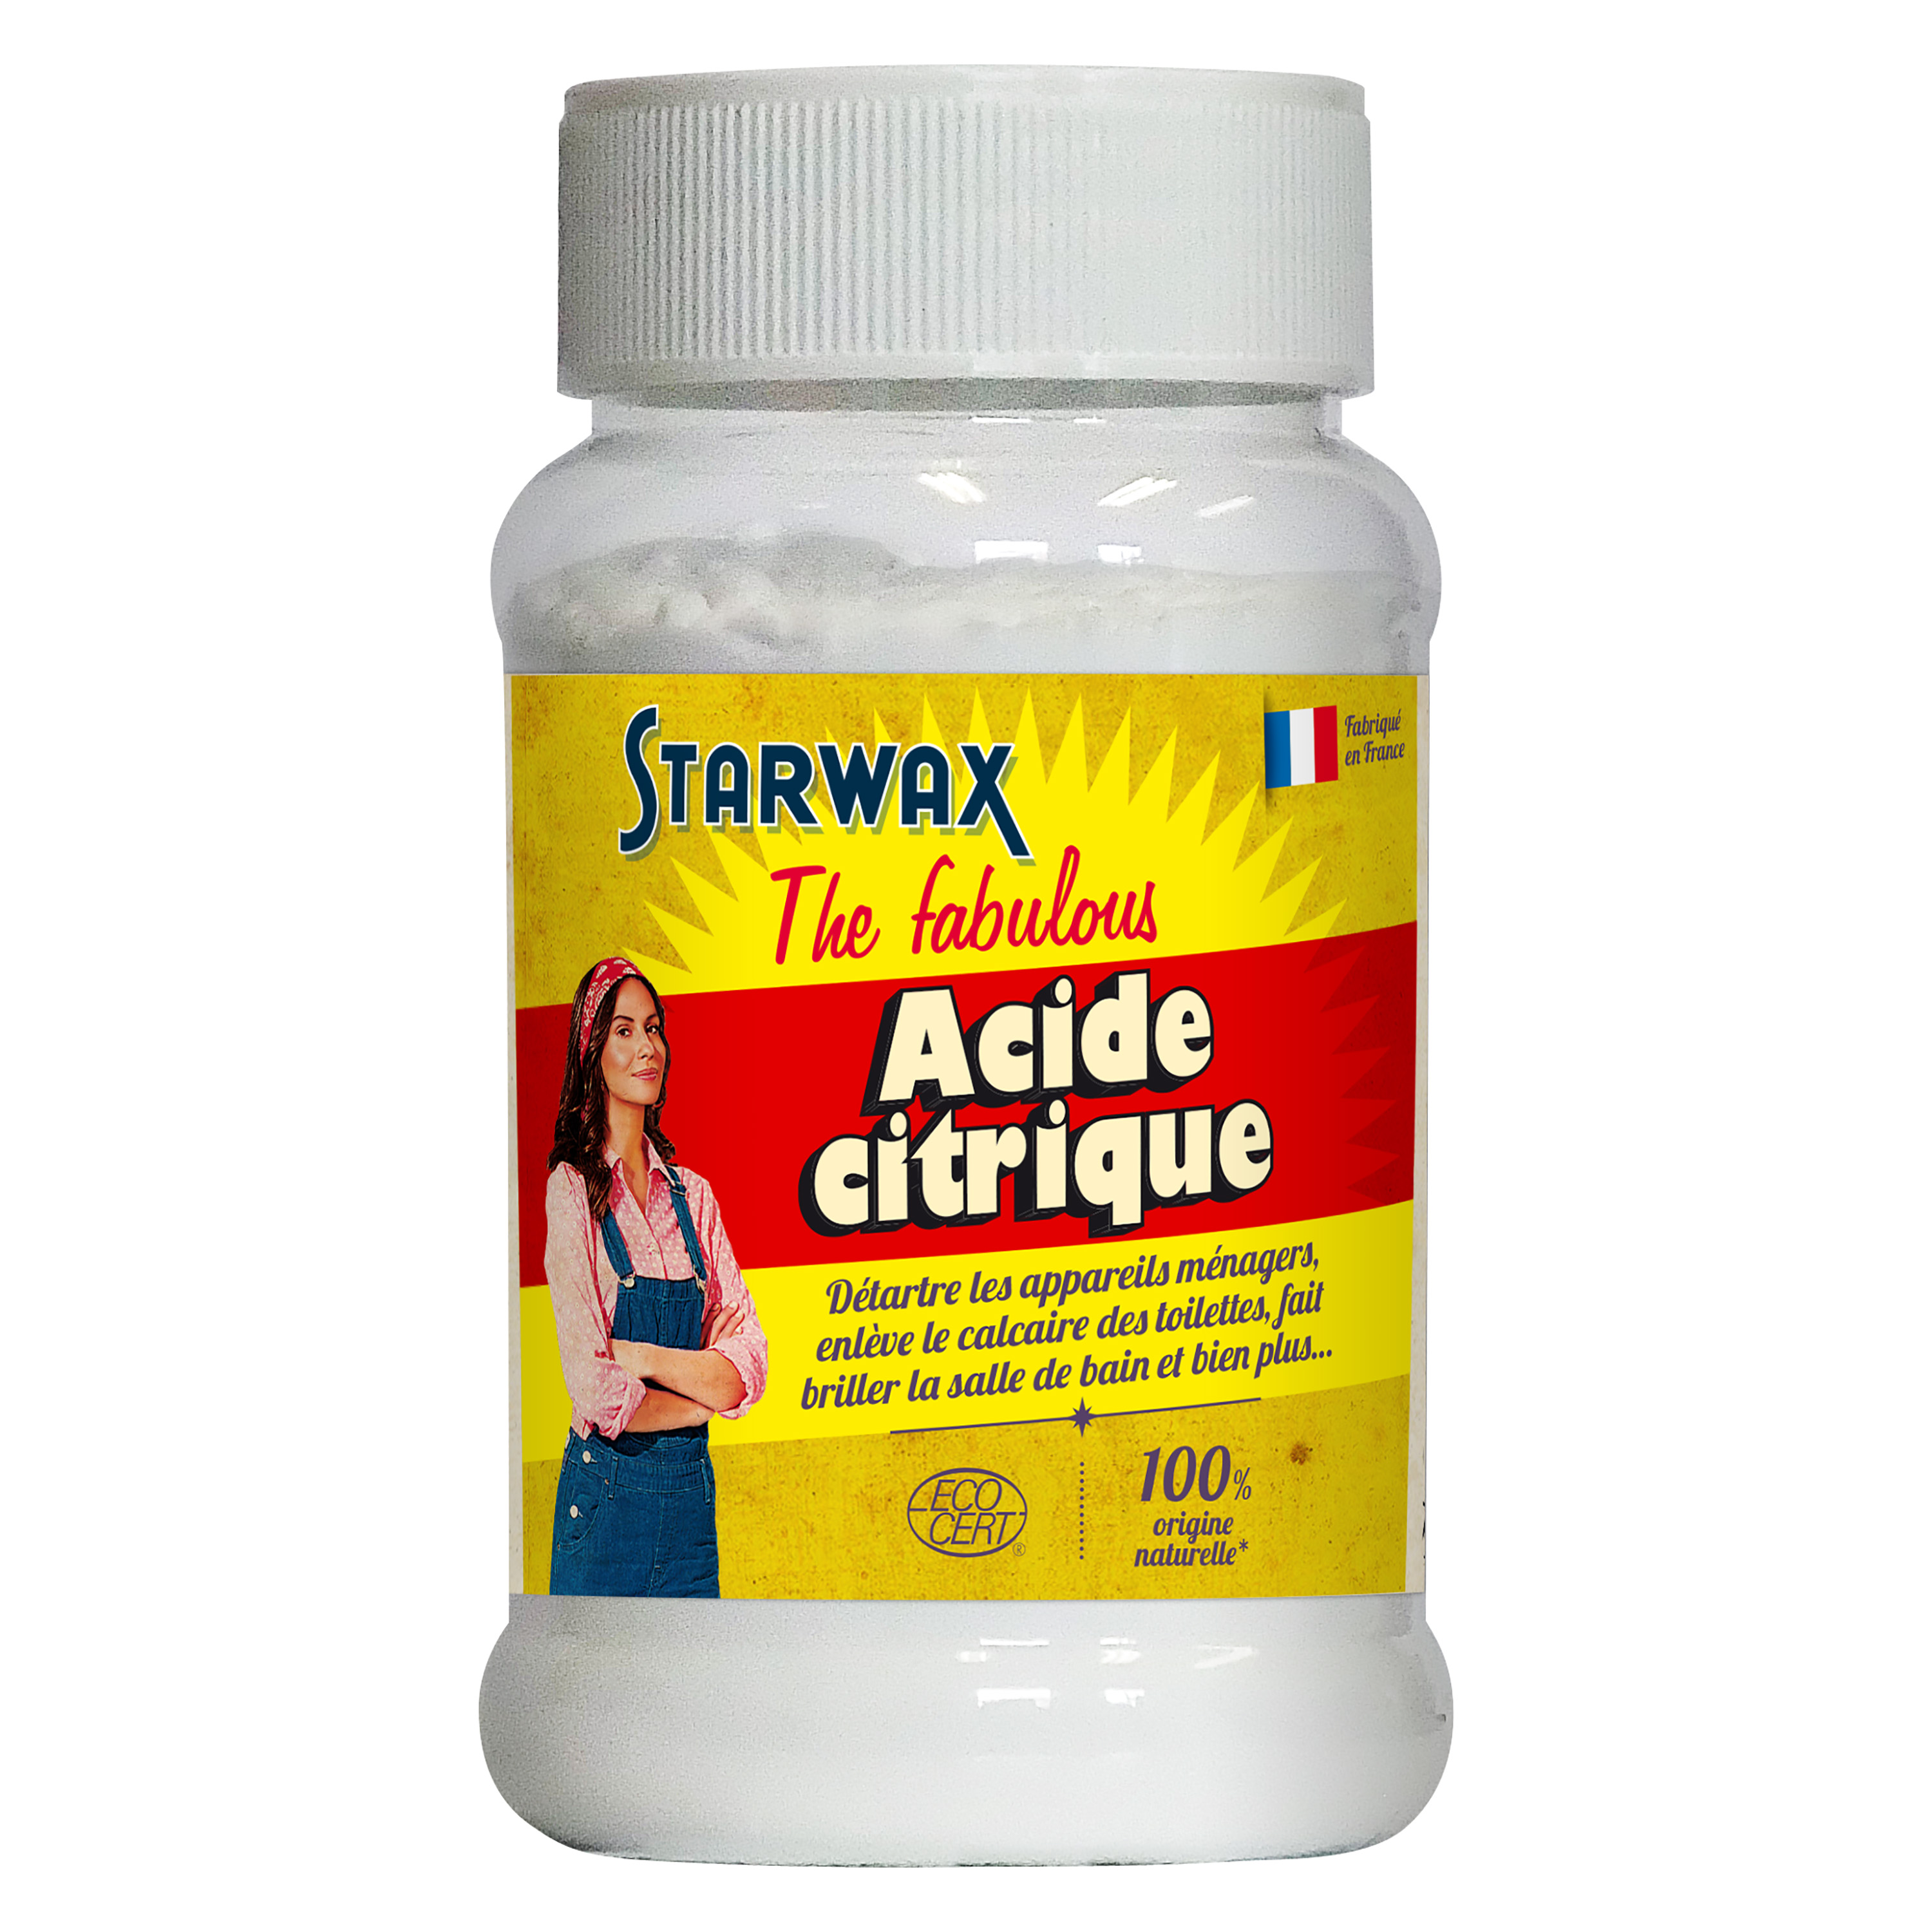 Acide citrique poudre 400gr - STARWAX THE FABULOUS